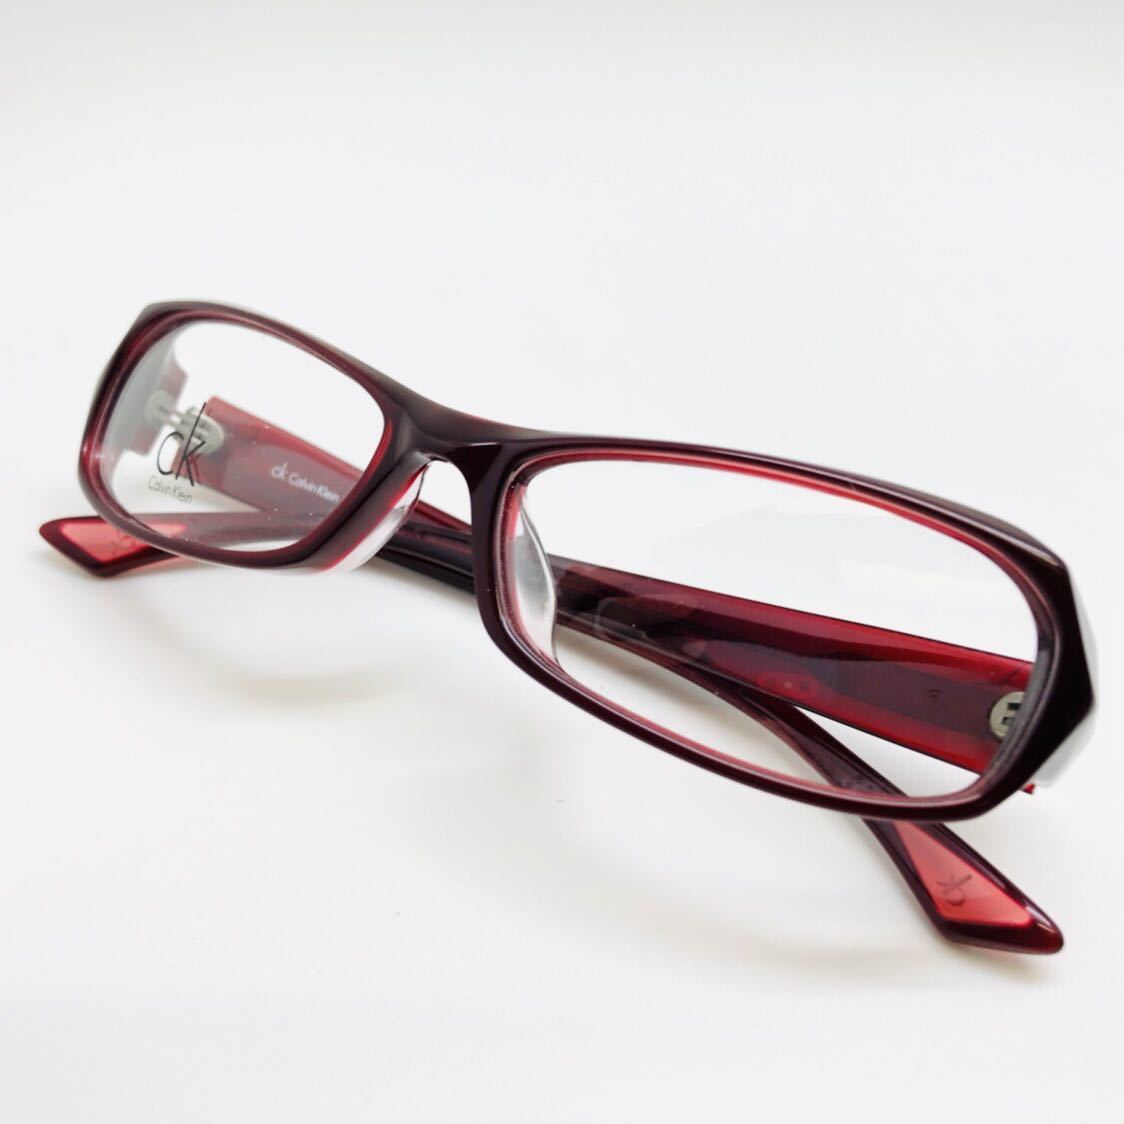 新品 CK Calvin Klein カルバンクライン メガネ 眼鏡 綺麗 上品 オシャレ かっこいい レッド